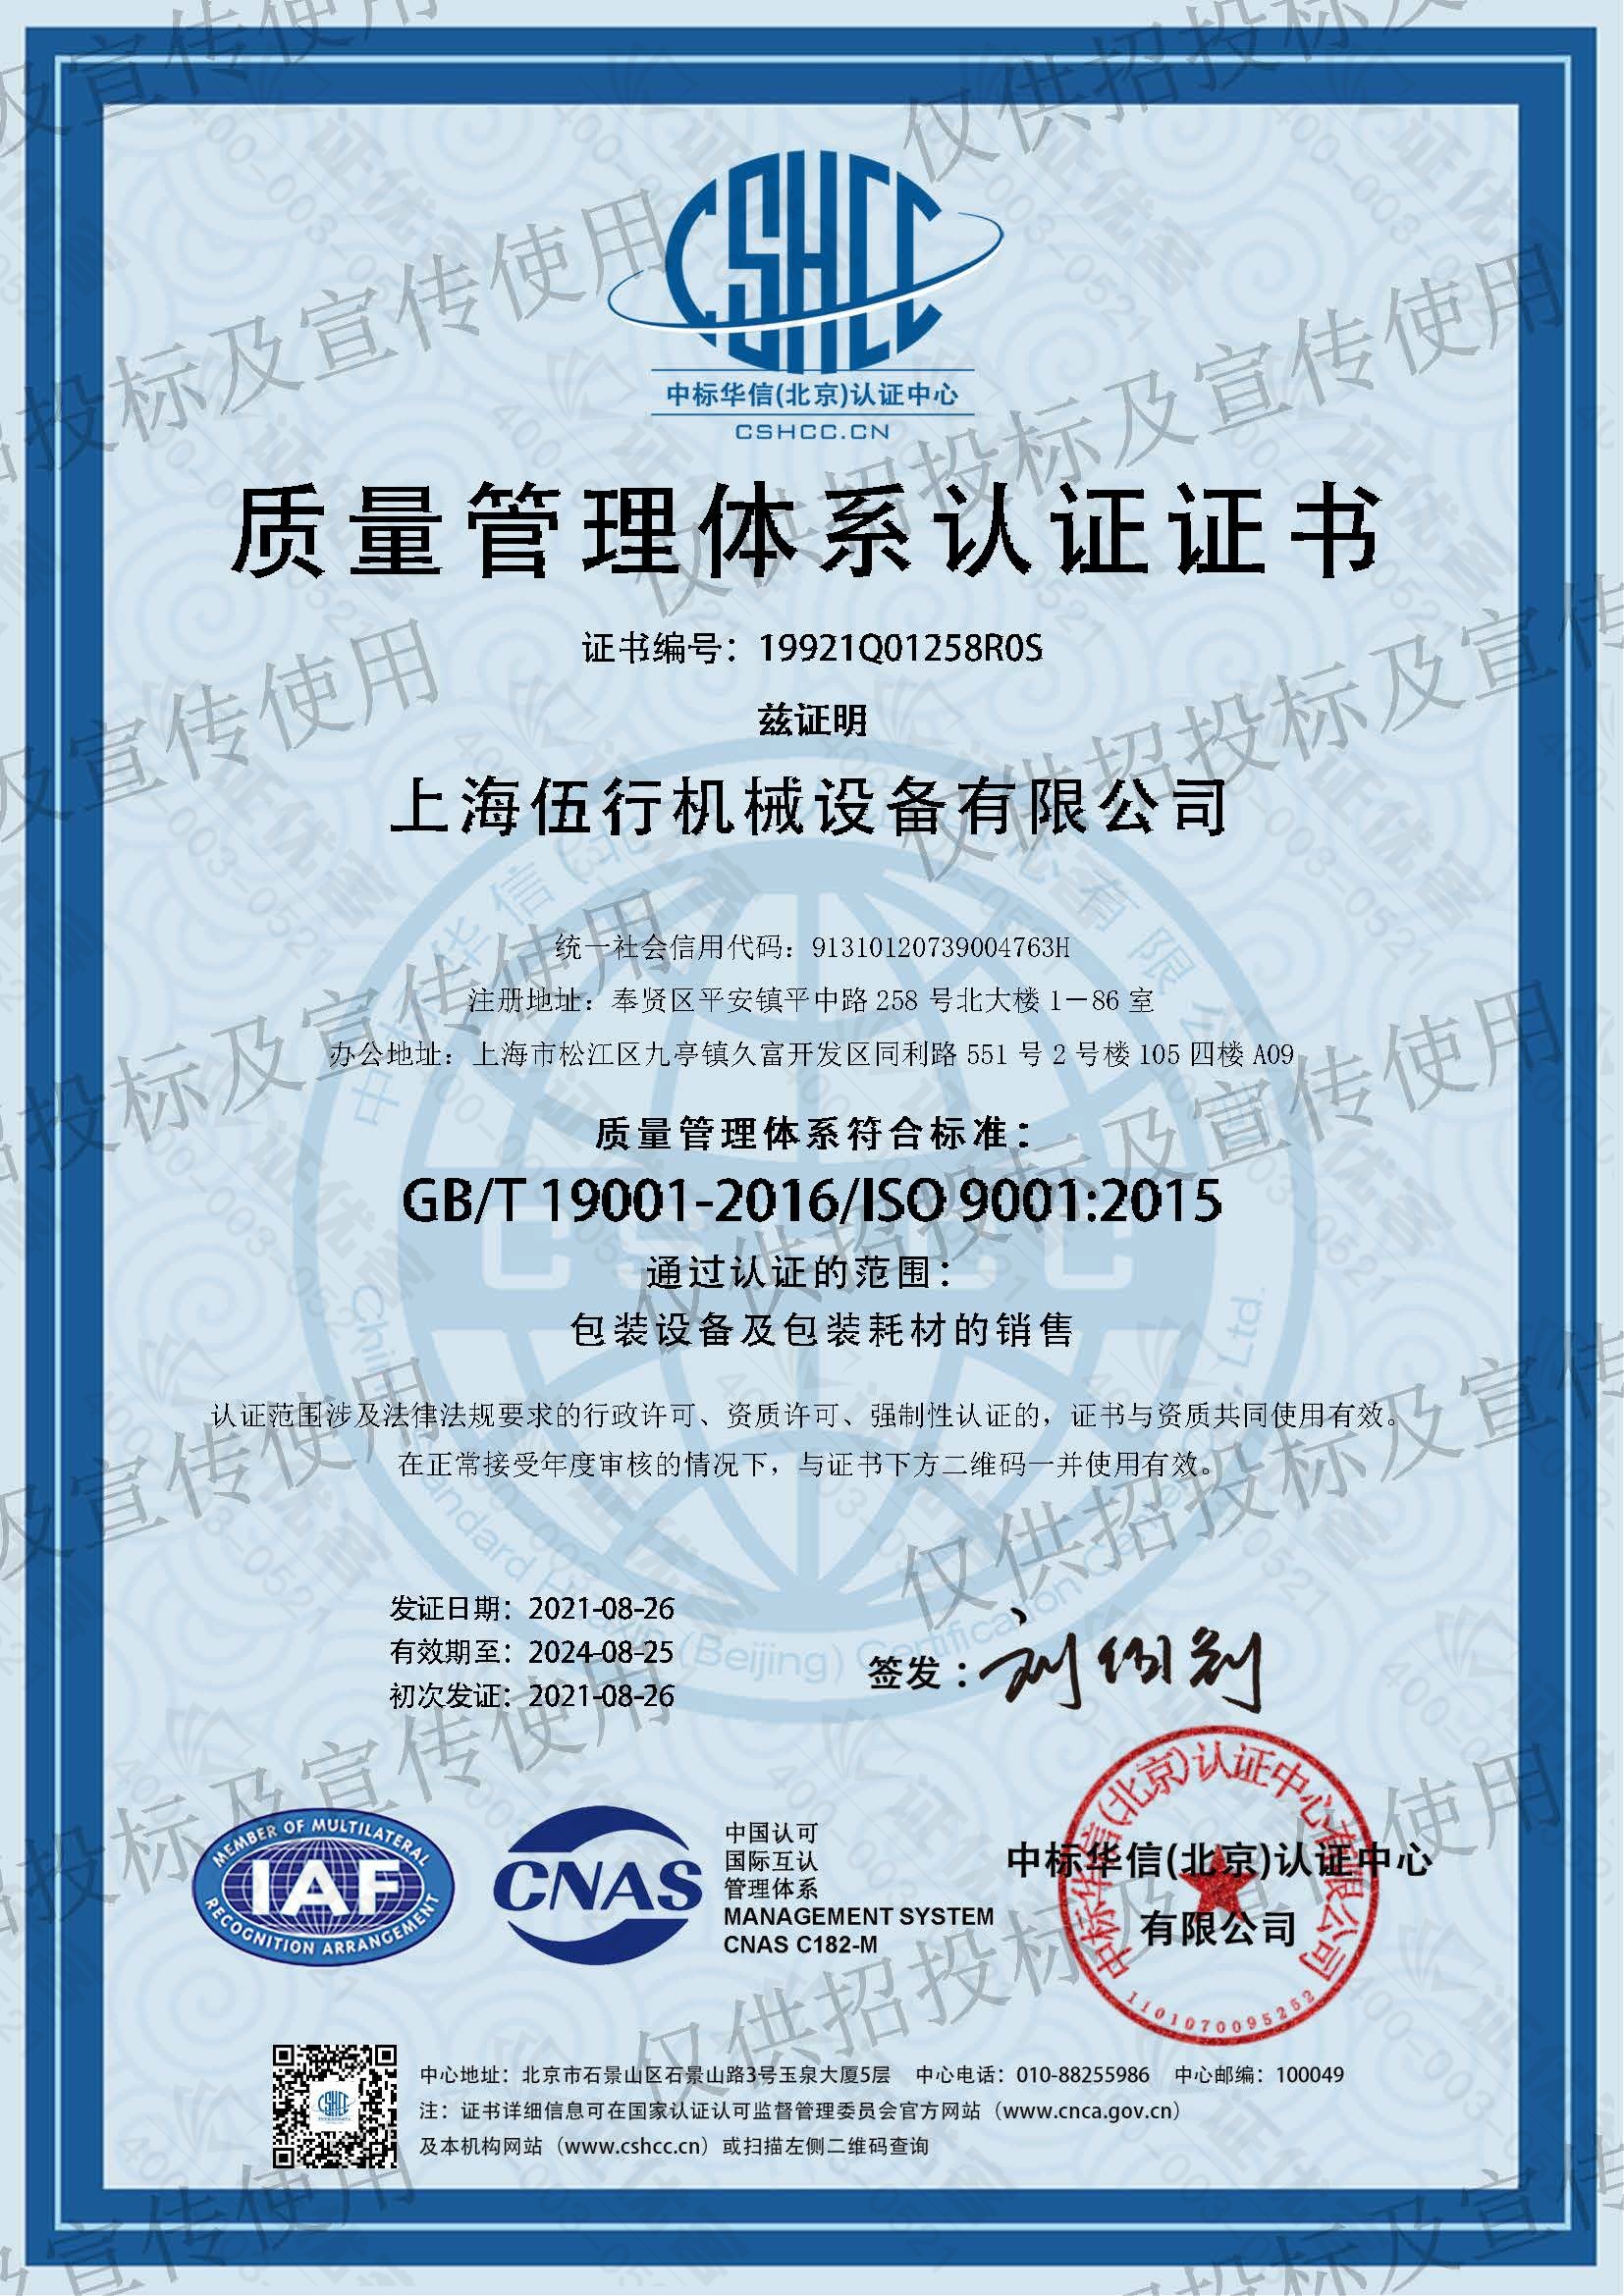 ISO9001体系认证